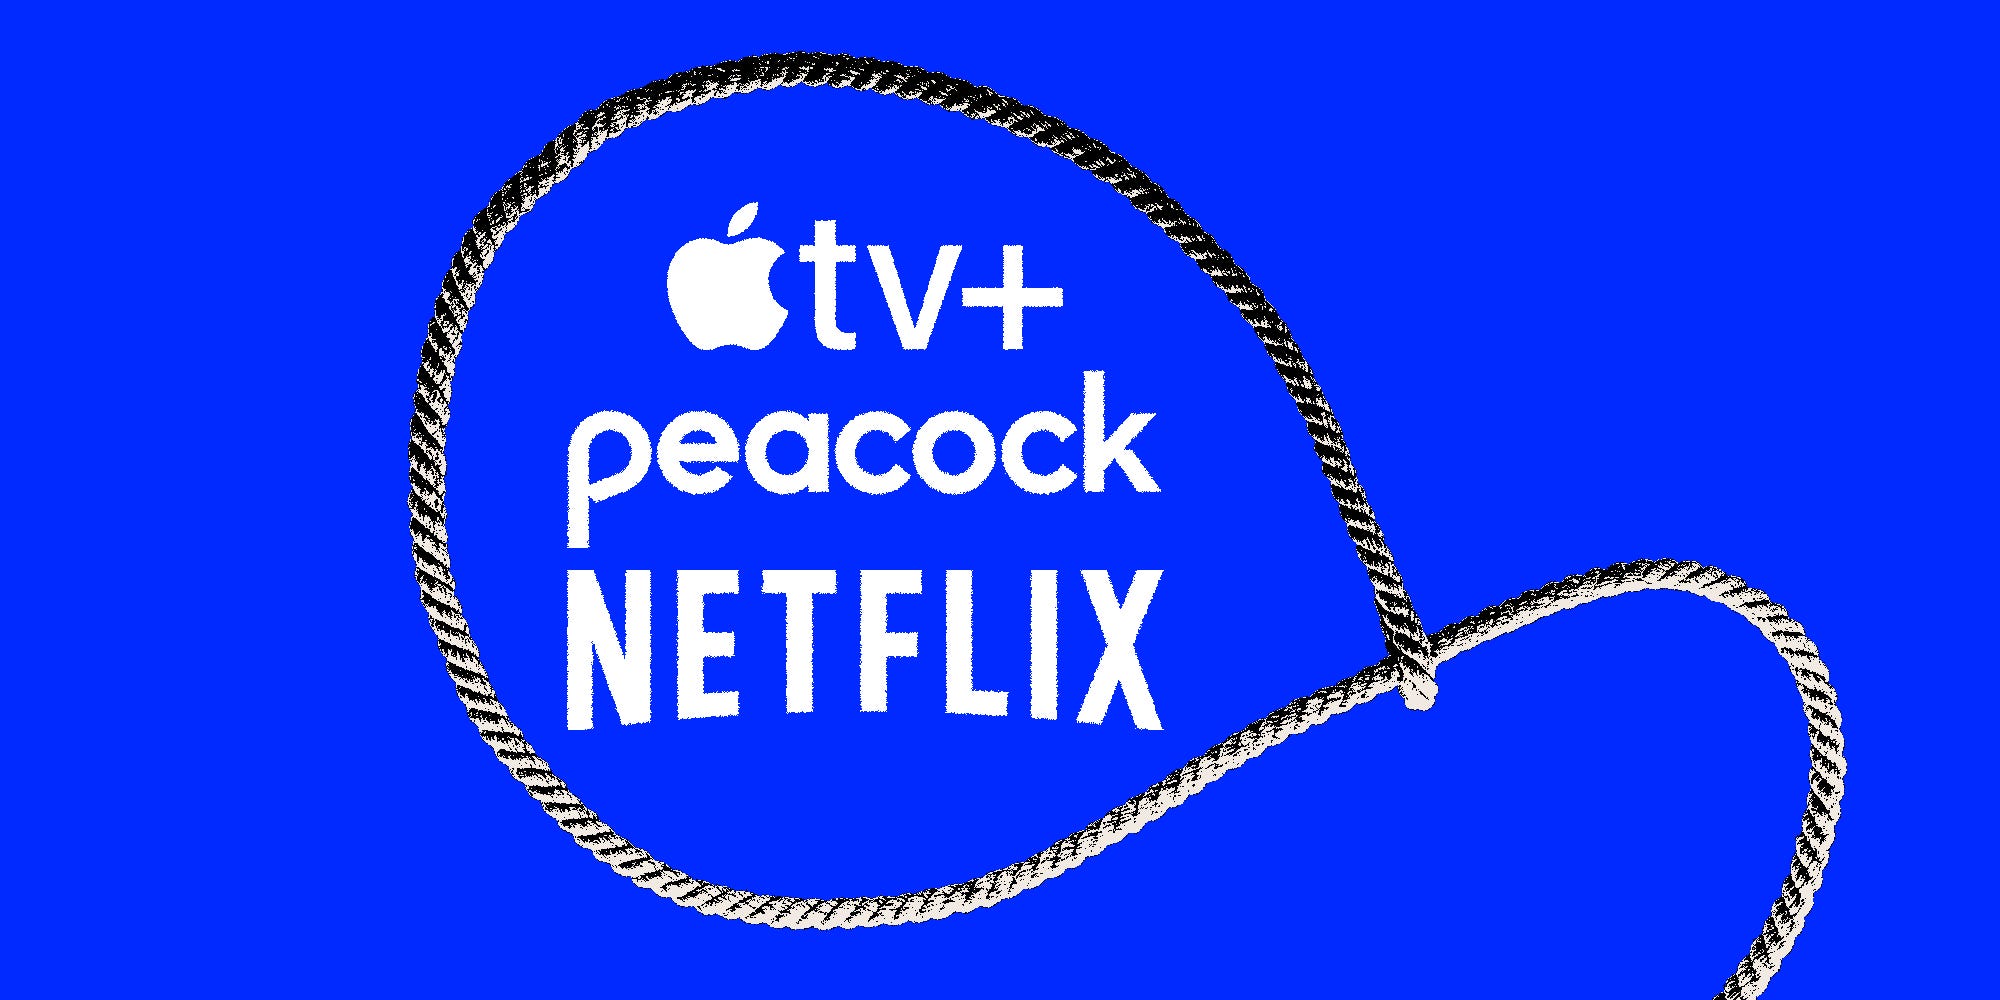 Apple TV +, Peacock und Netflix-Logo in einem Lasso